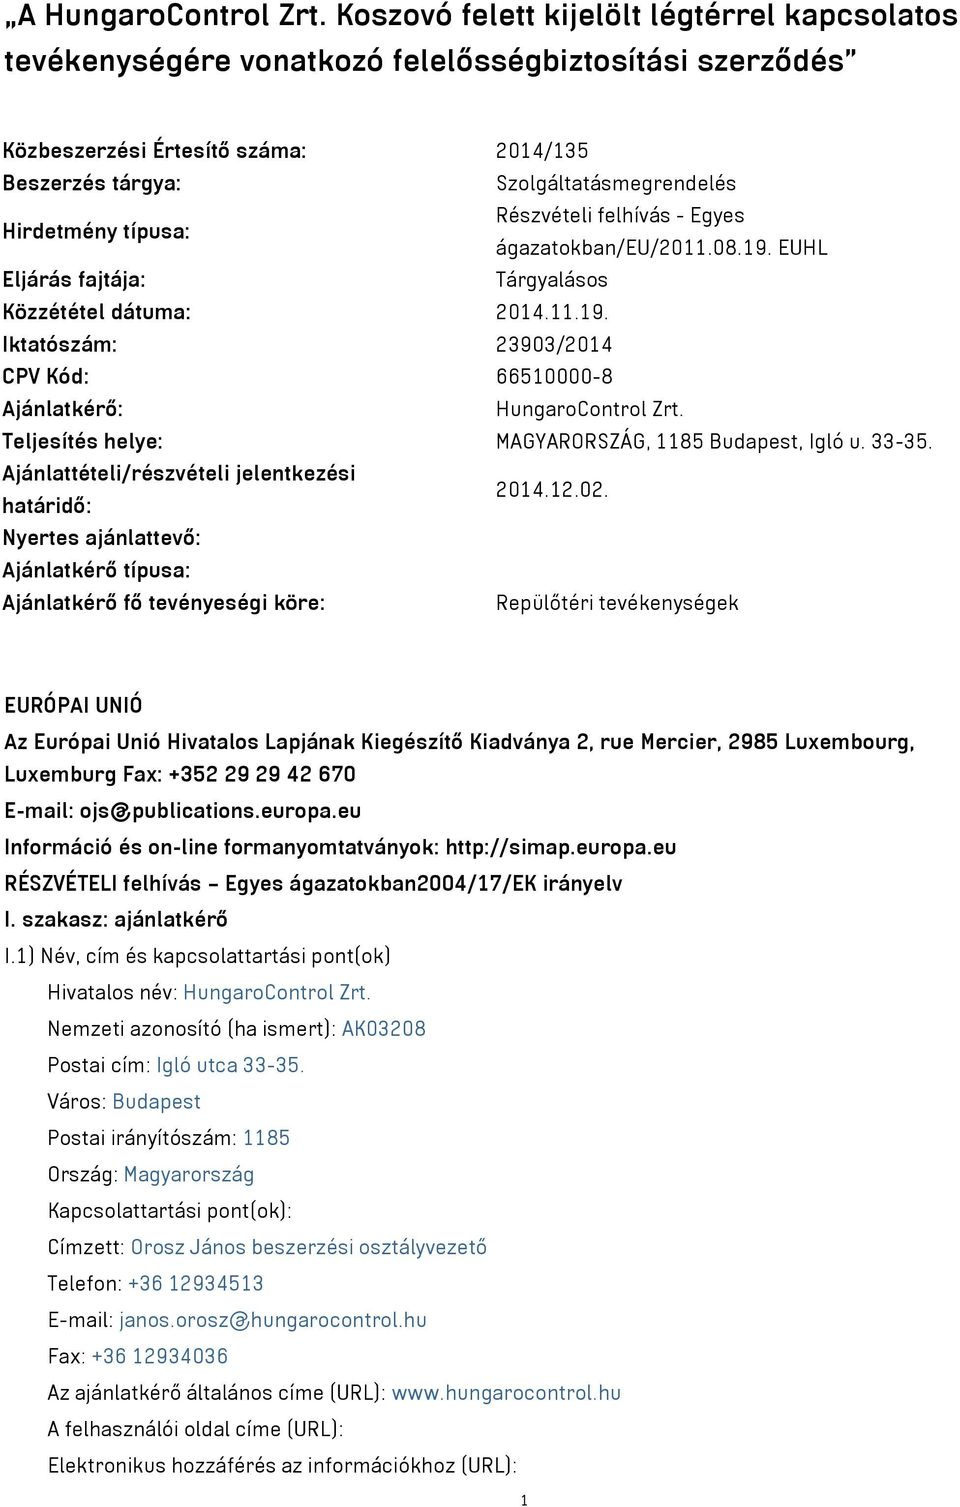 típusa: Részvételi felhívás - Egyes ágazatokban/eu/2011.08.19. EUHL Eljárás fajtája: Tárgyalásos Közzététel dátuma: 2014.11.19. Iktatószám: 23903/2014 CPV Kód: 66510000-8 Ajánlatkérő: HungaroControl Zrt.